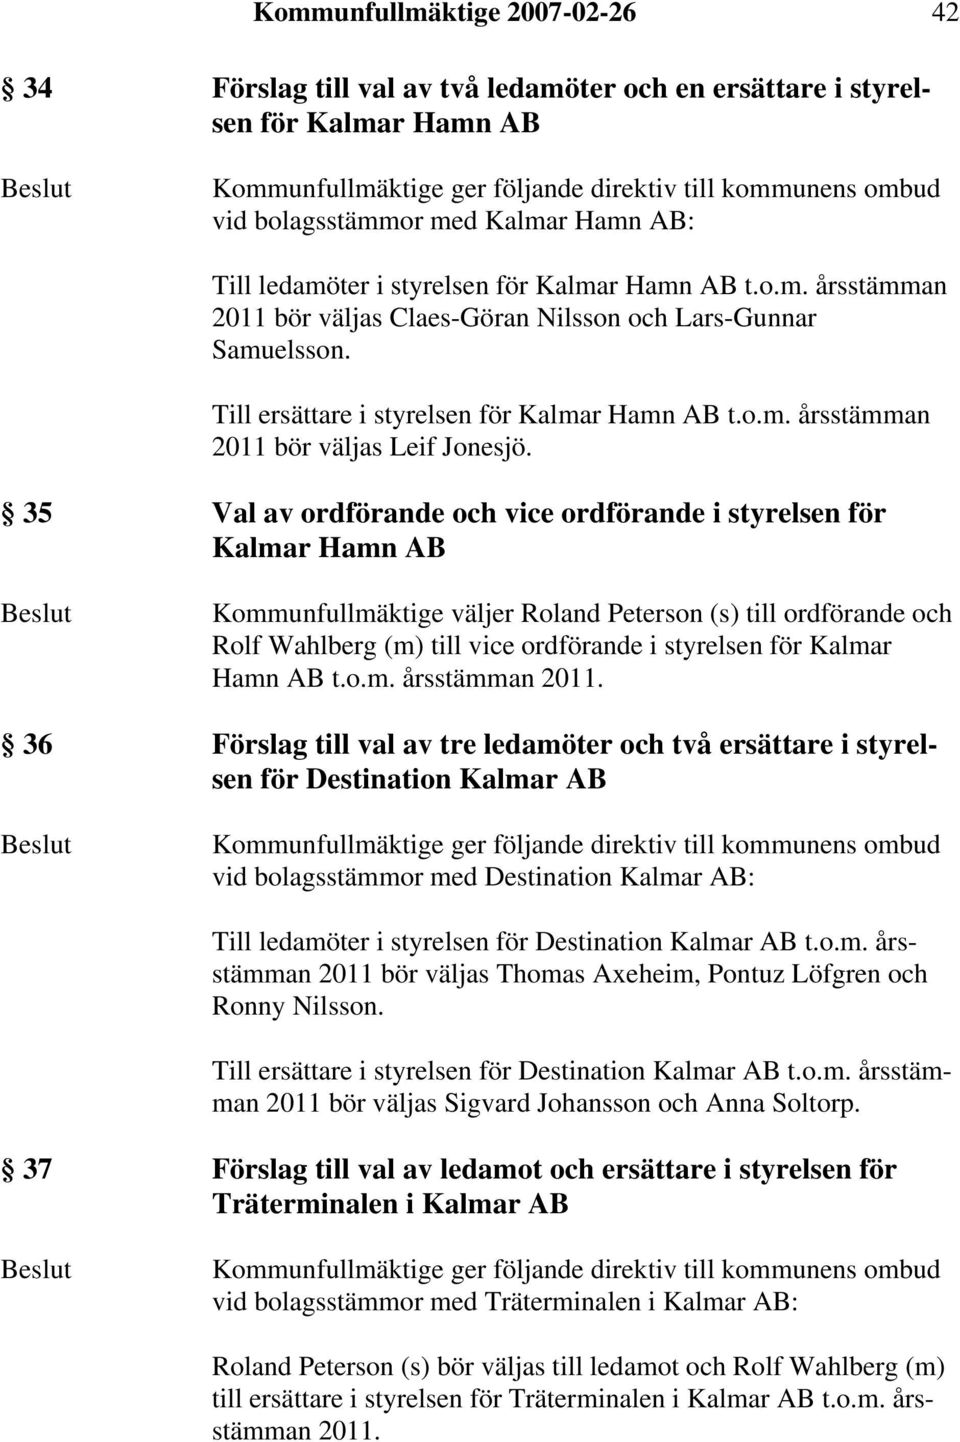 35 Val av ordförande och vice ordförande i styrelsen för Kalmar Hamn AB Kommunfullmäktige väljer Roland Peterson (s) till ordförande och Rolf Wahlberg (m) till vice ordförande i styrelsen för Kalmar